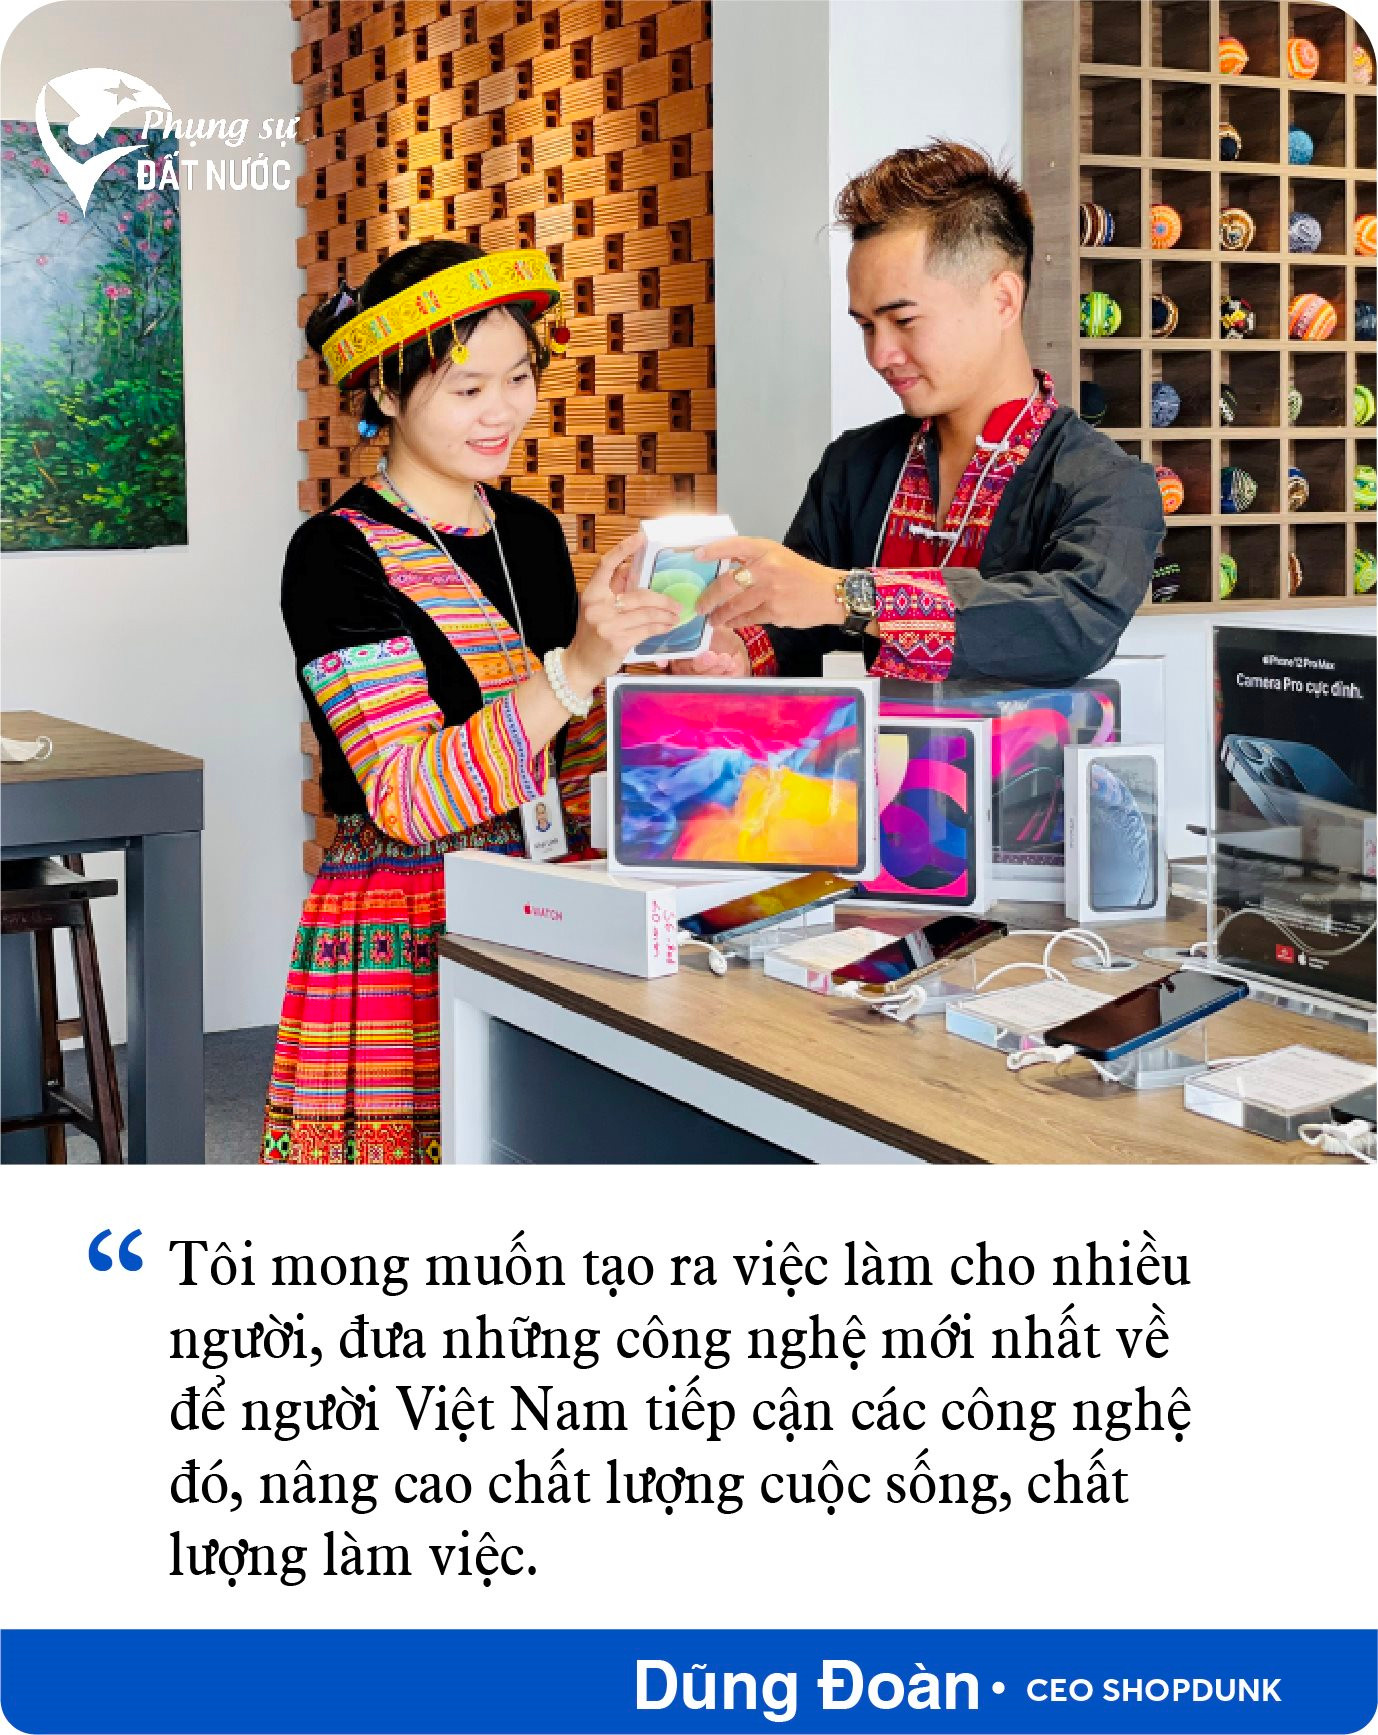 CEO ShopDunk Dũng Đoàn: Người Việt yêu Apple nhưng chưa được hồi đáp xứng đáng - Ảnh 12.